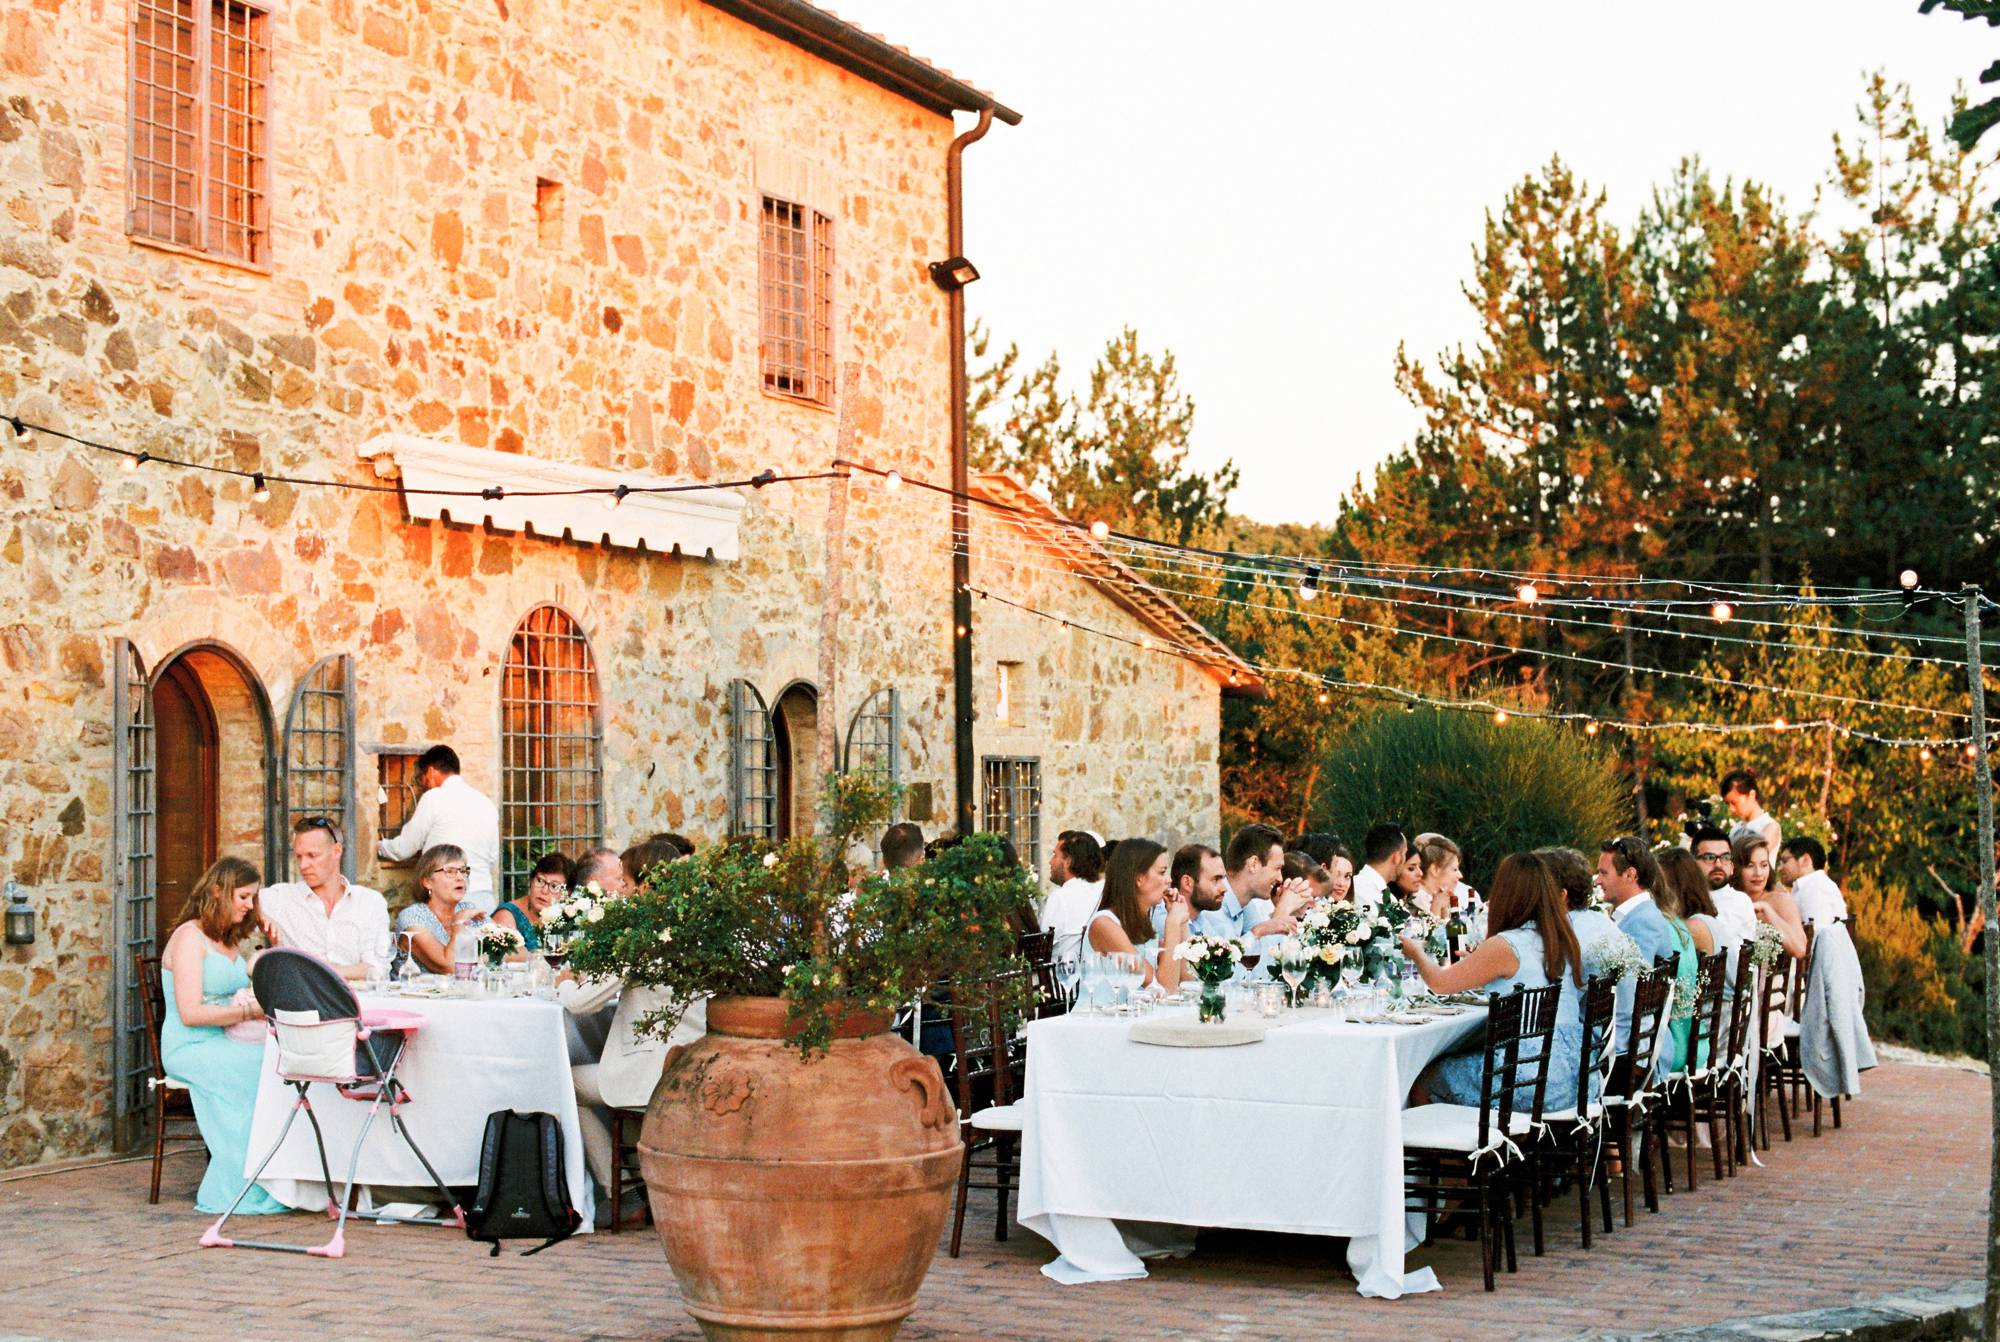 Wedding photographer Destination Wedding Tuscany Italy - Wedding in Radicondoli Tuscany Italy